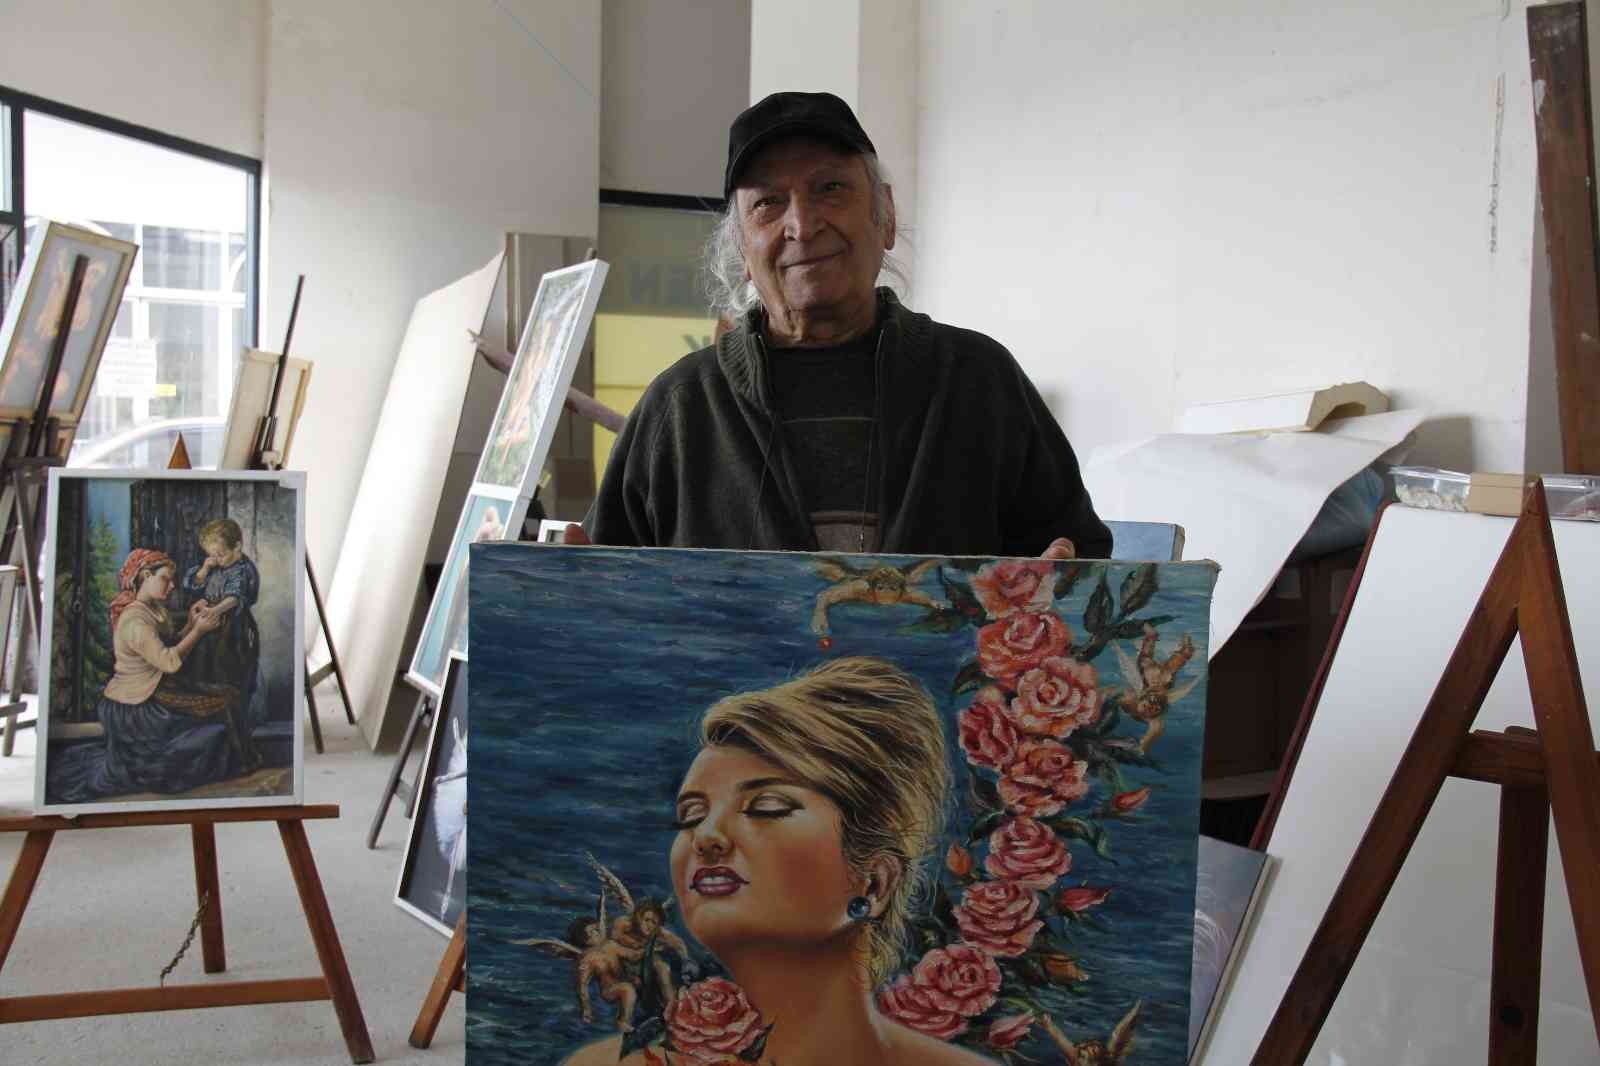 Kocaeli’de yaşayan 77 yaşındaki Halis Yıldız, ilkokul yıllarında hobi olarak başladığı ressamlığı 54 yıldır profesyonel şekilde sürdürüyor ...